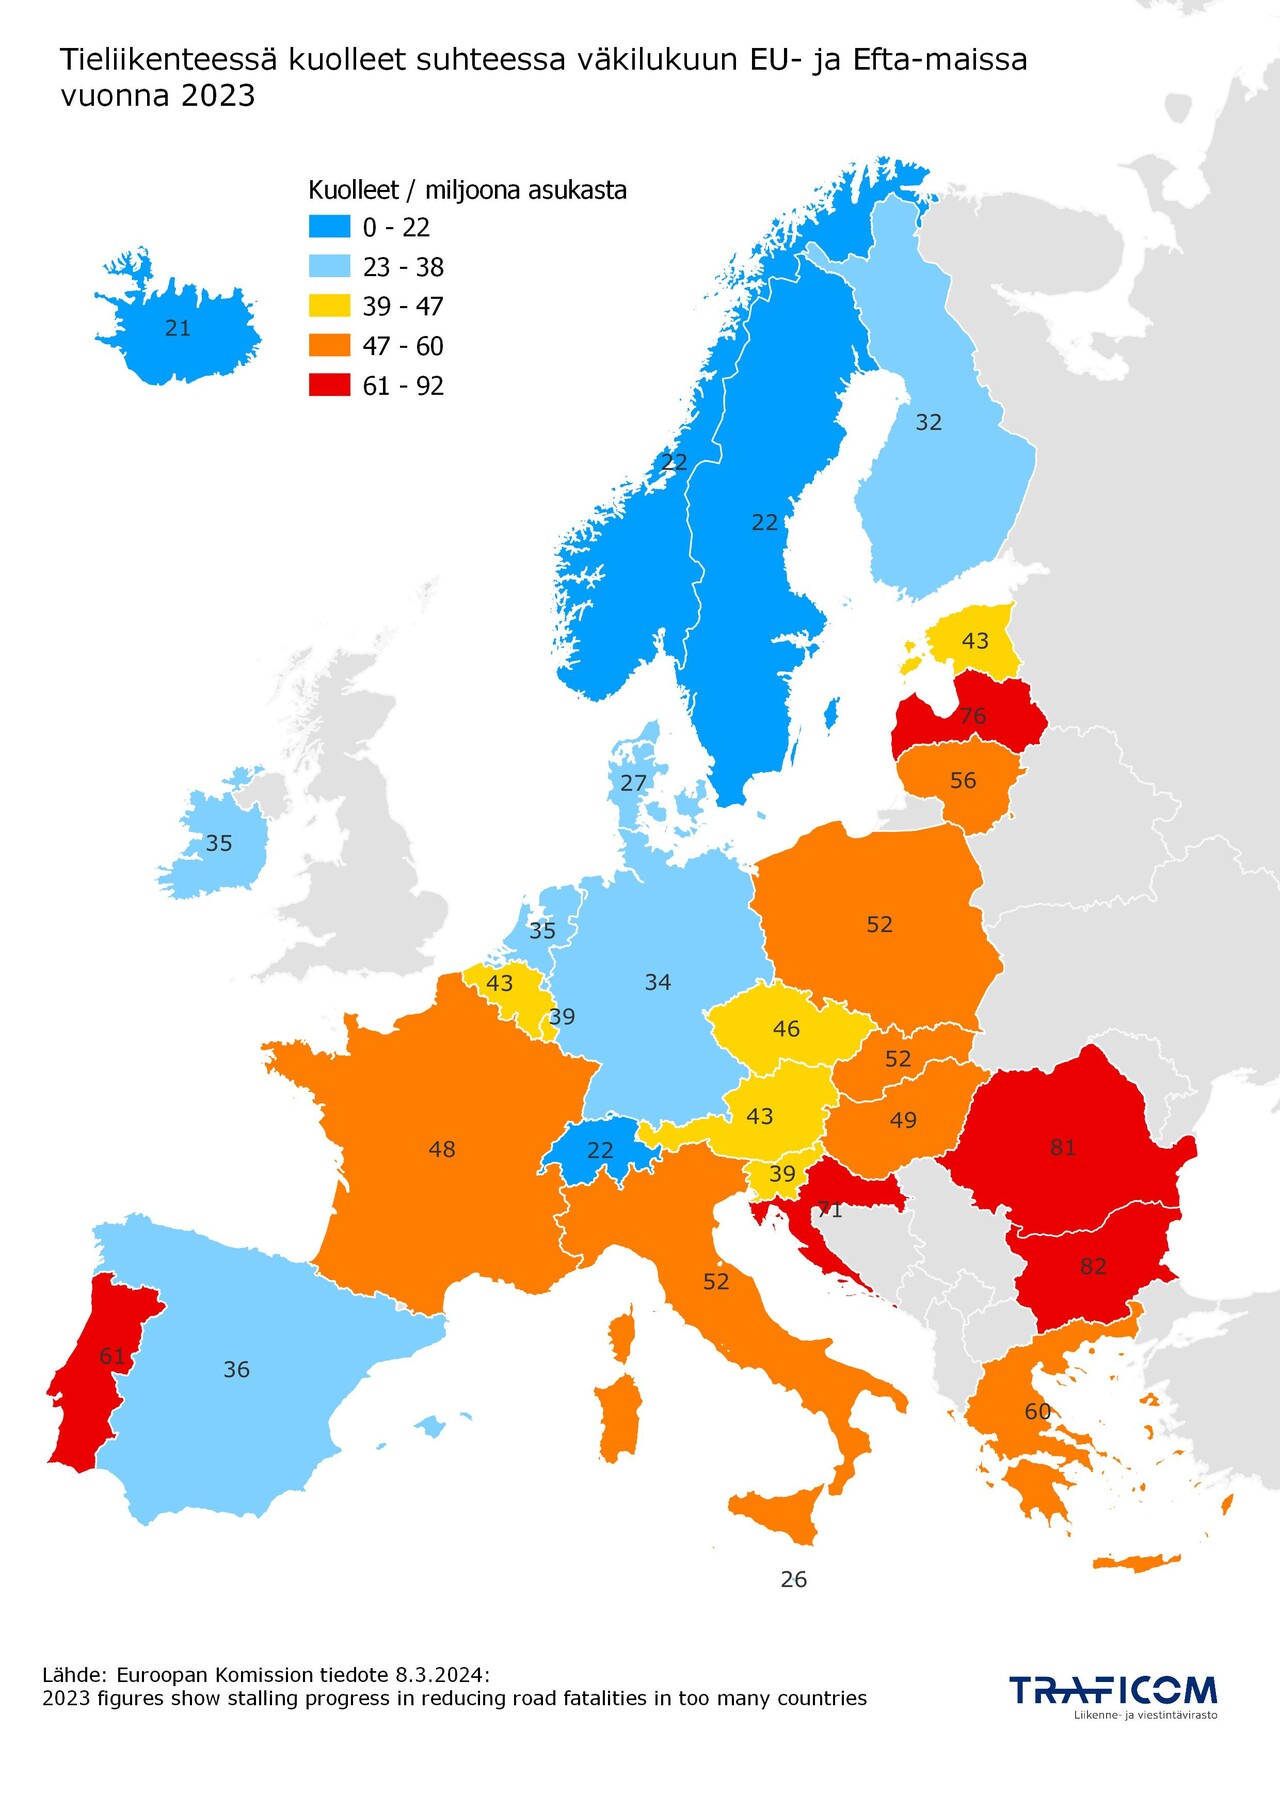 Tieliikenteessä kuolleet suhteessa väkilukuun EU-maissa, ennakkotieto vuodesta 2023